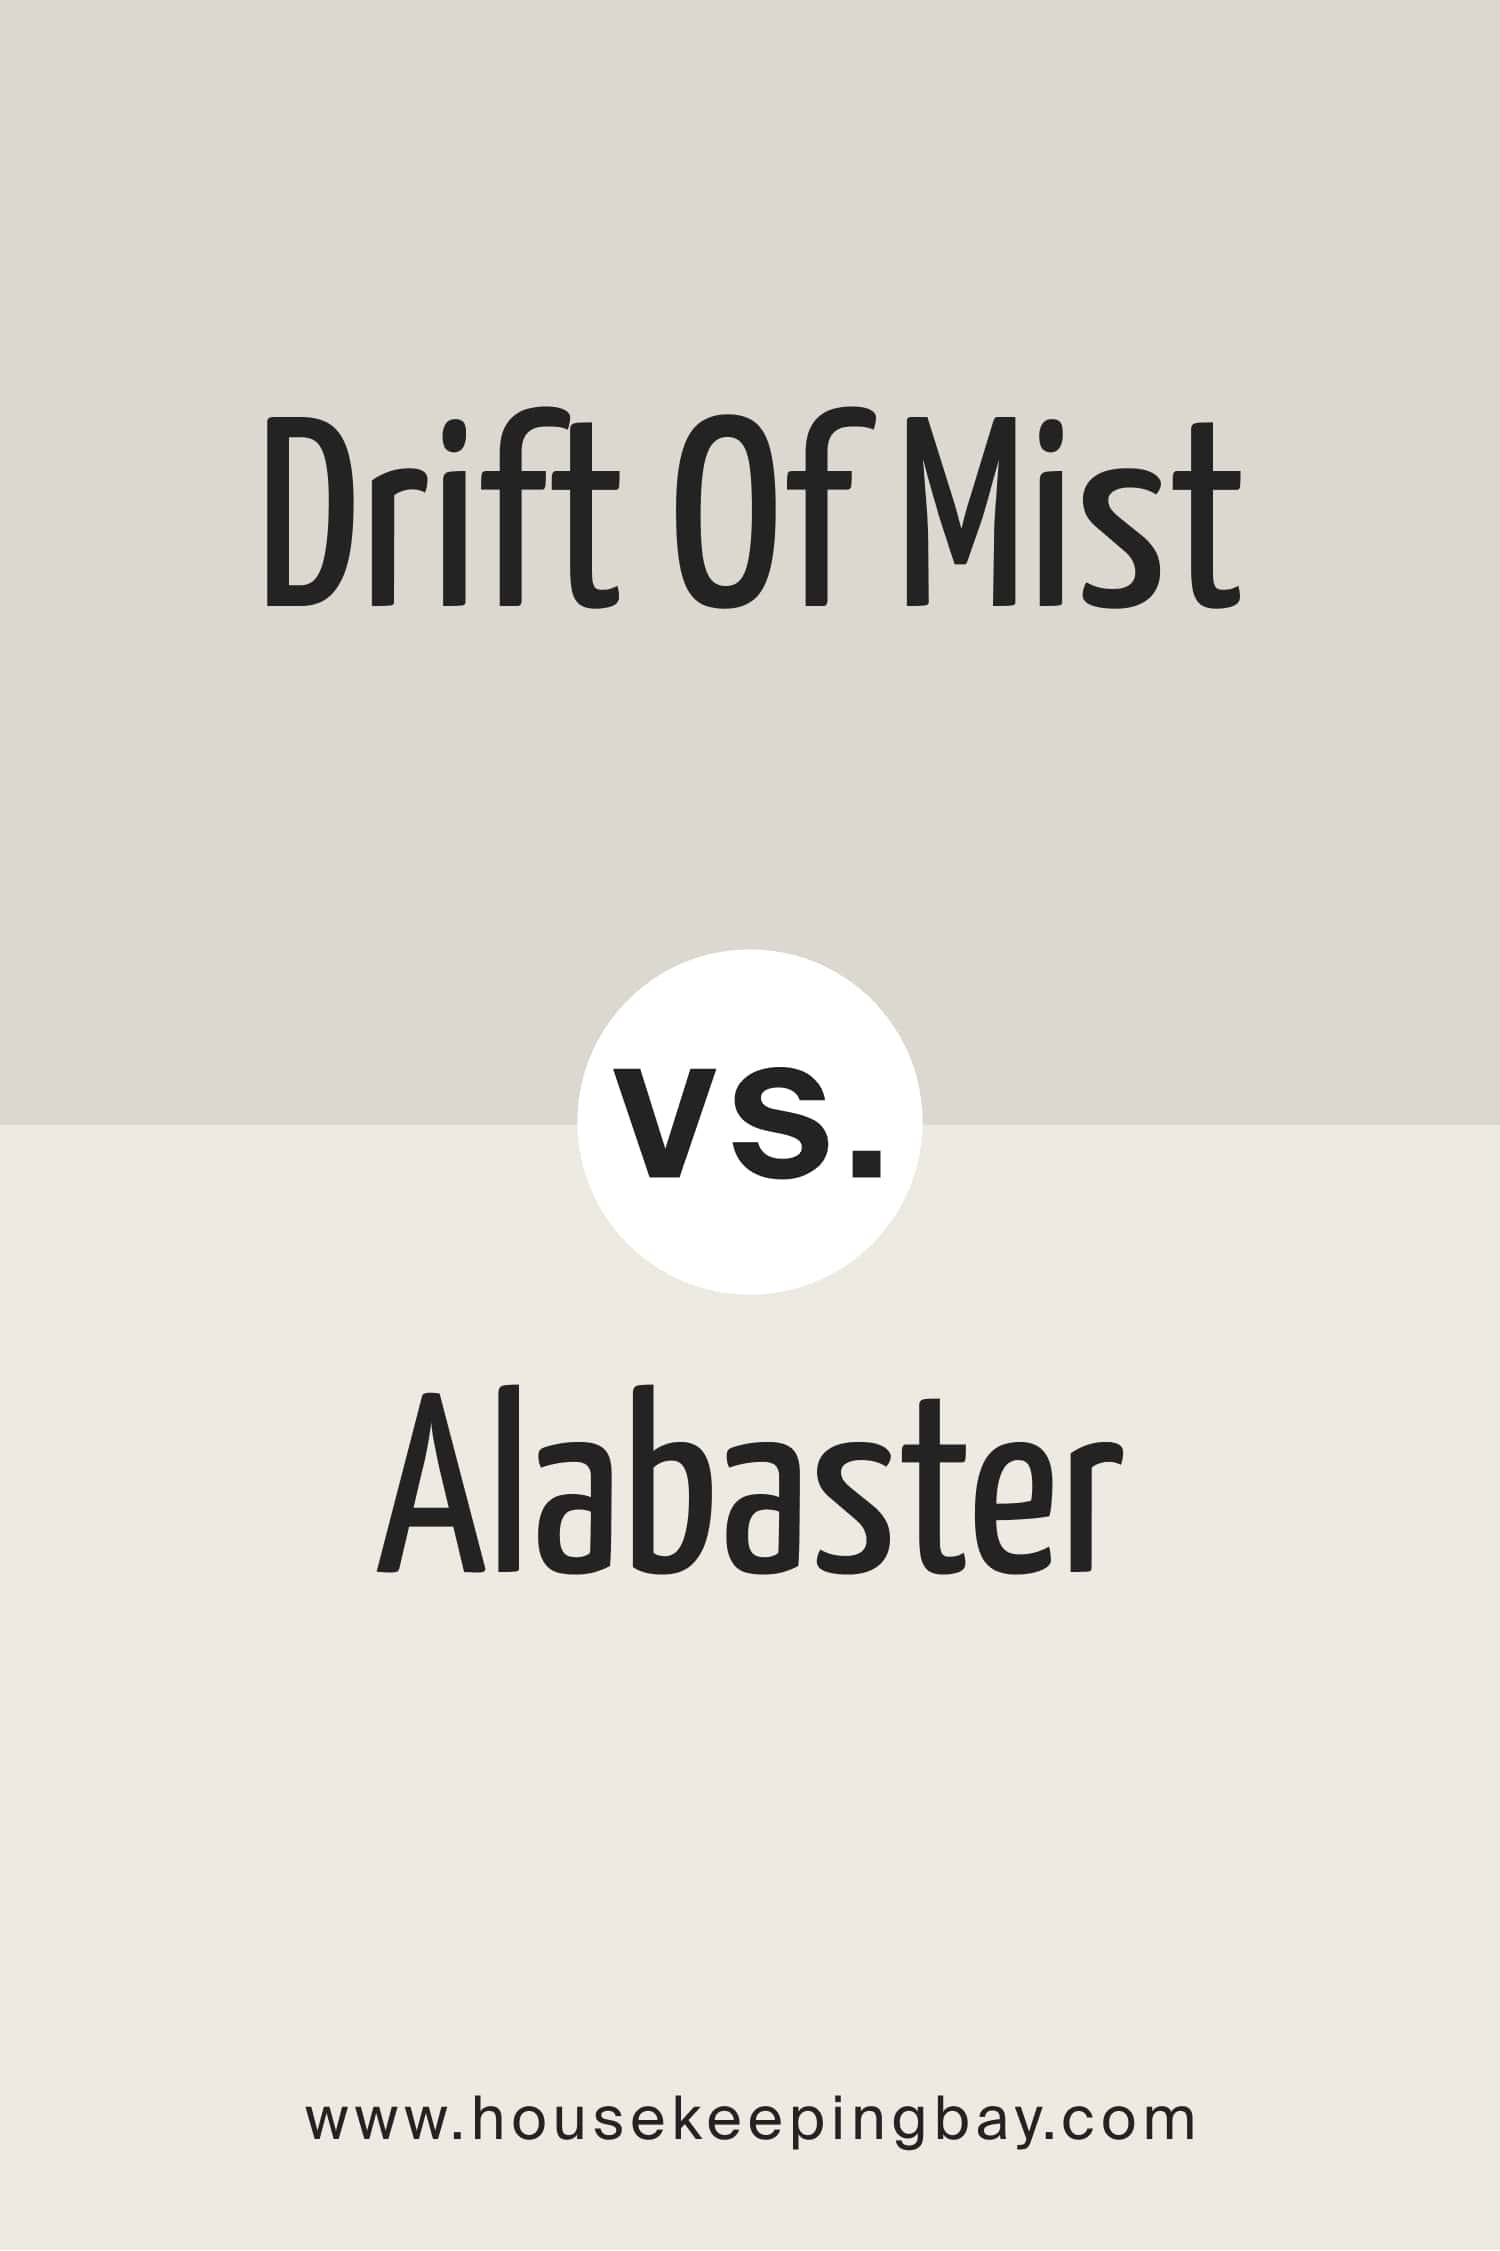 Drift of Mist vs Alabaster